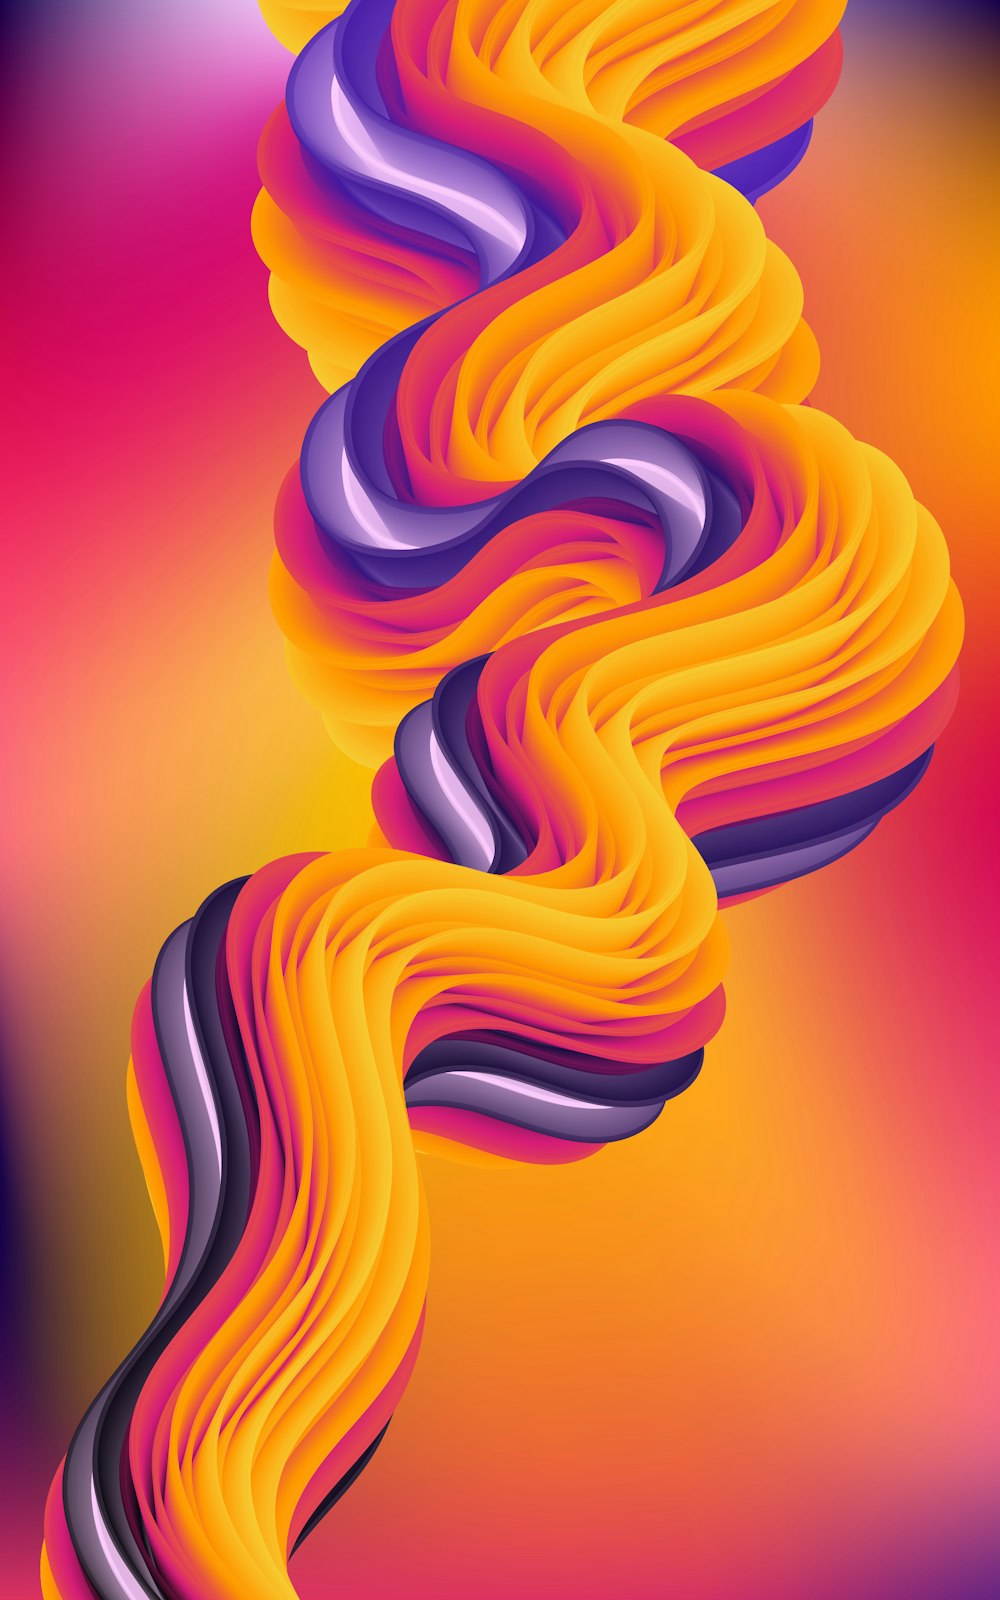 여러 가지 빛깔의 배경에 물결 모양의 선의 추상 그림